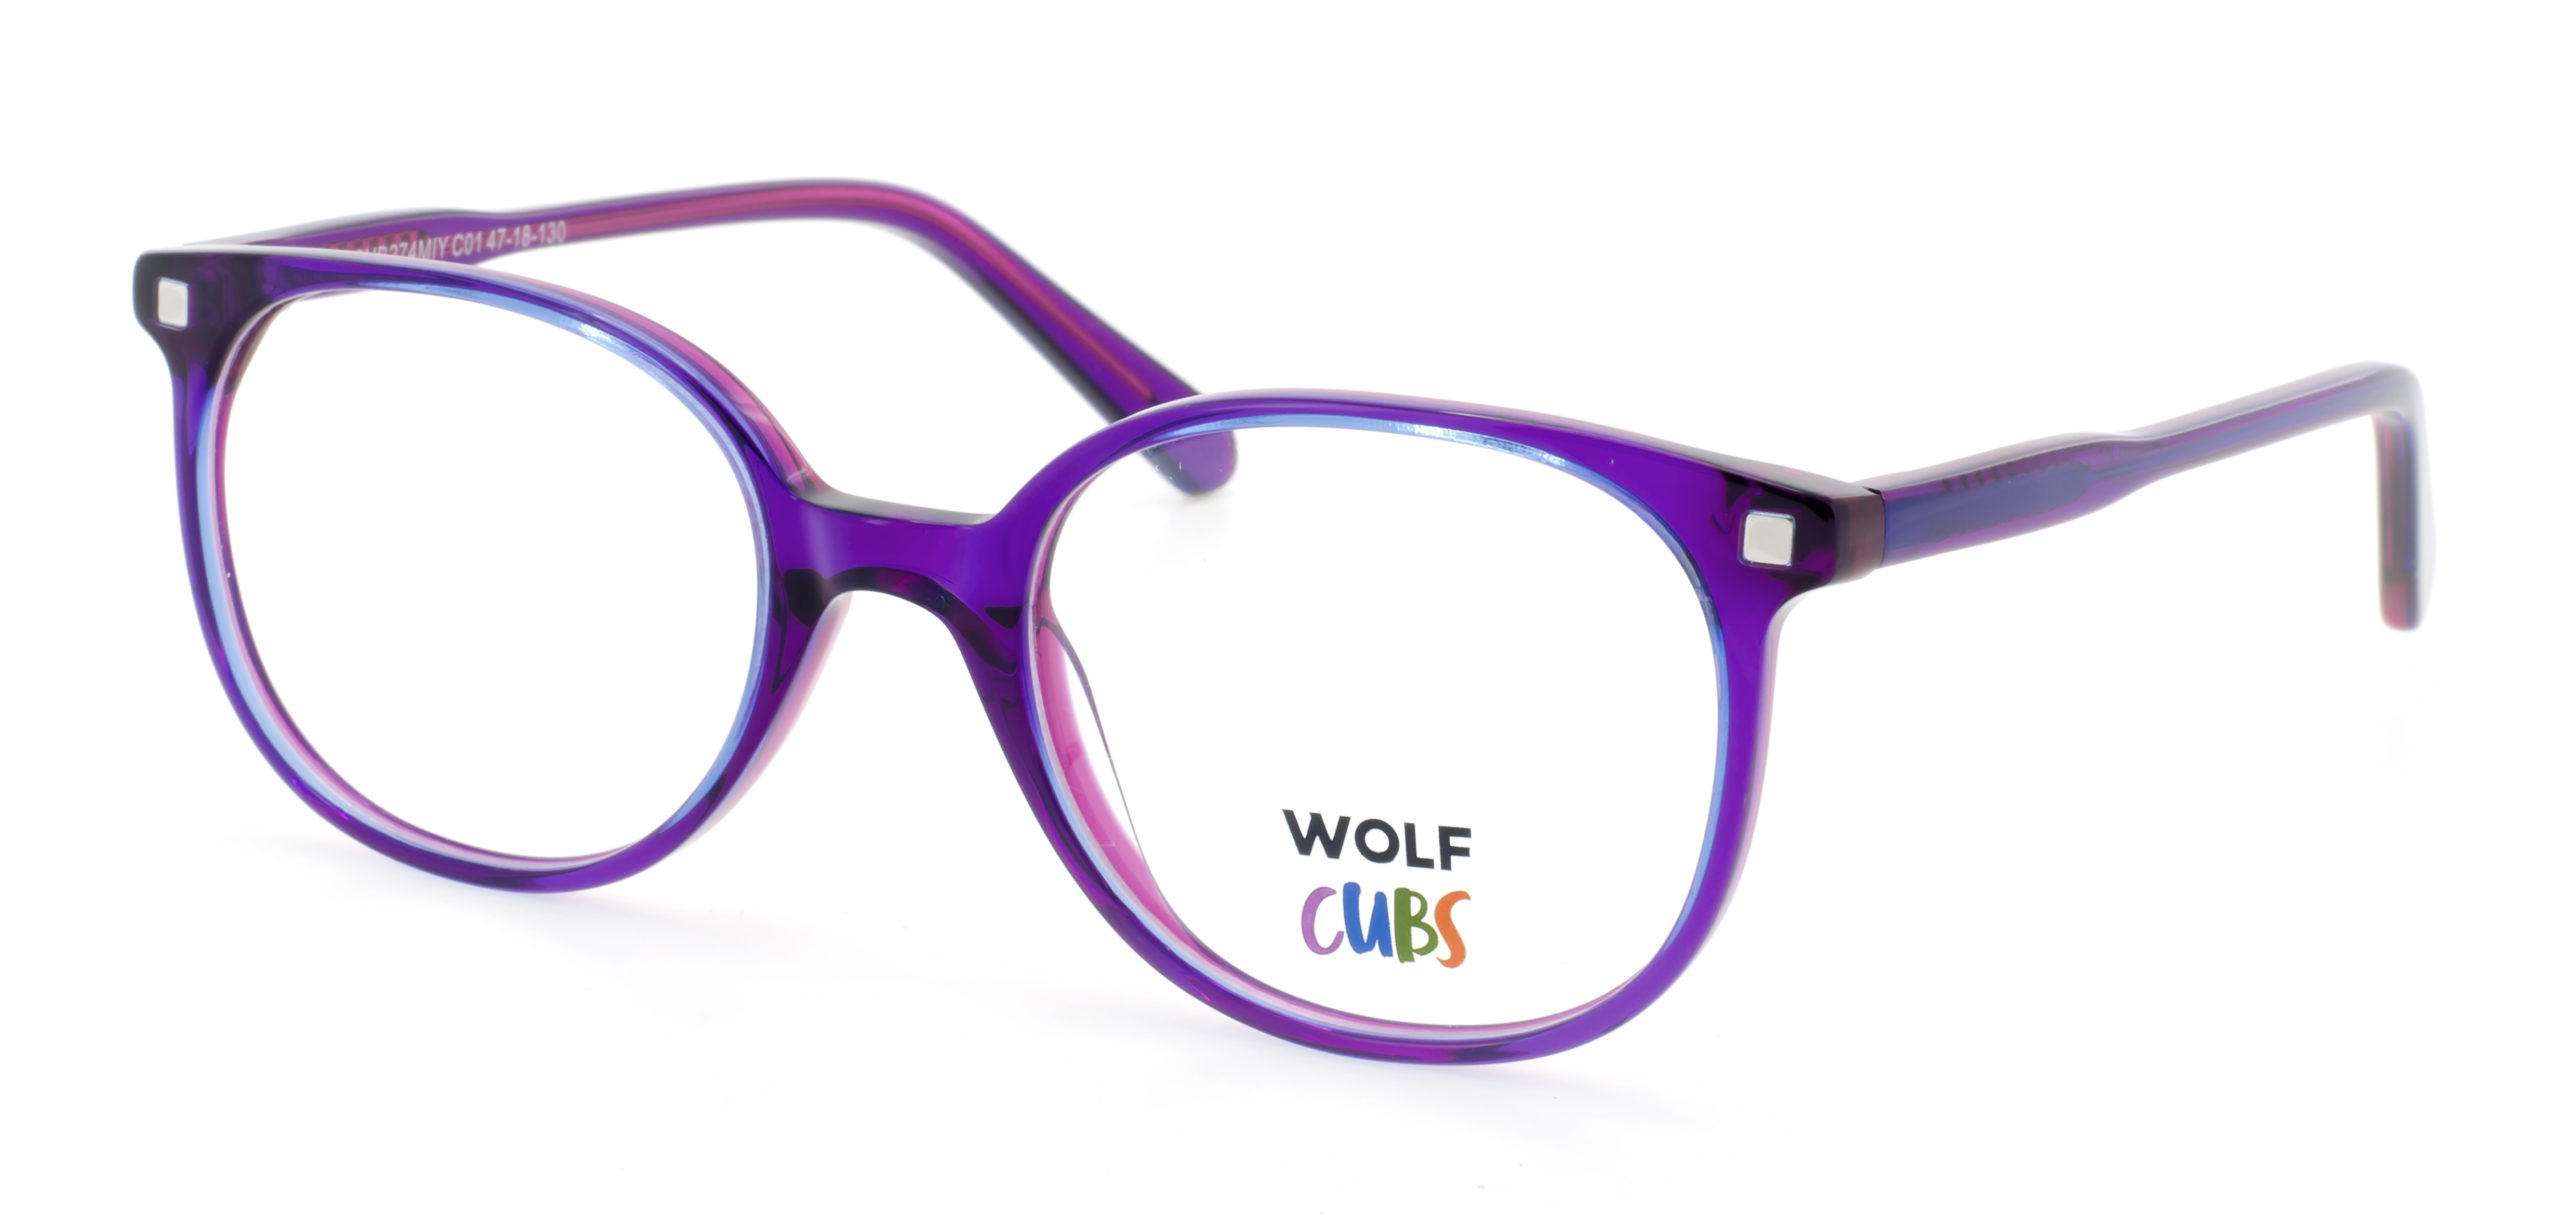 wolf_cub274miy_purple